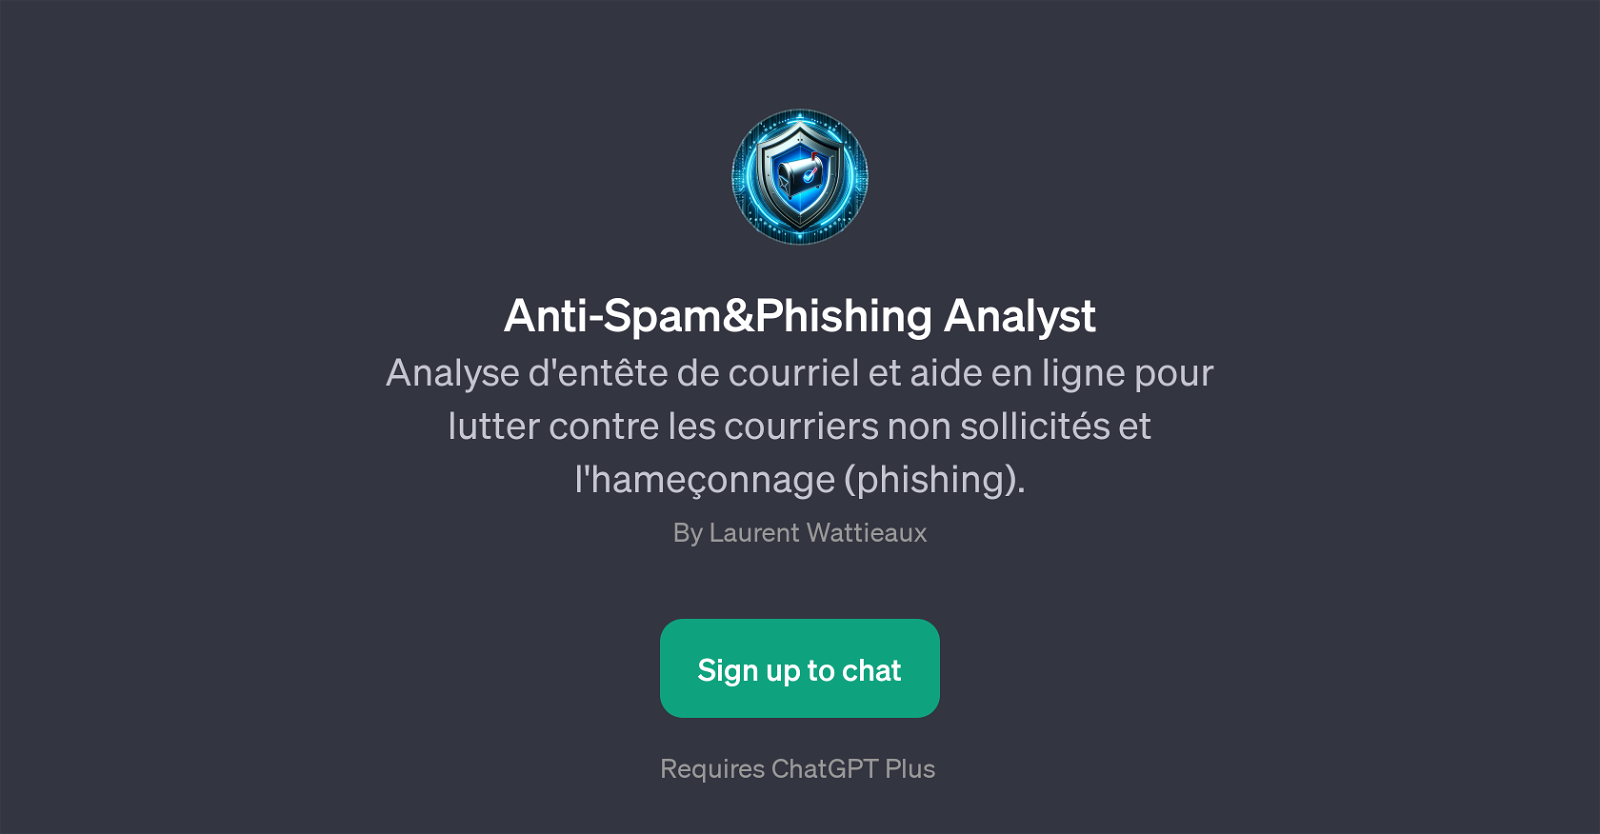 Anti-Spam&Phishing Analyst website